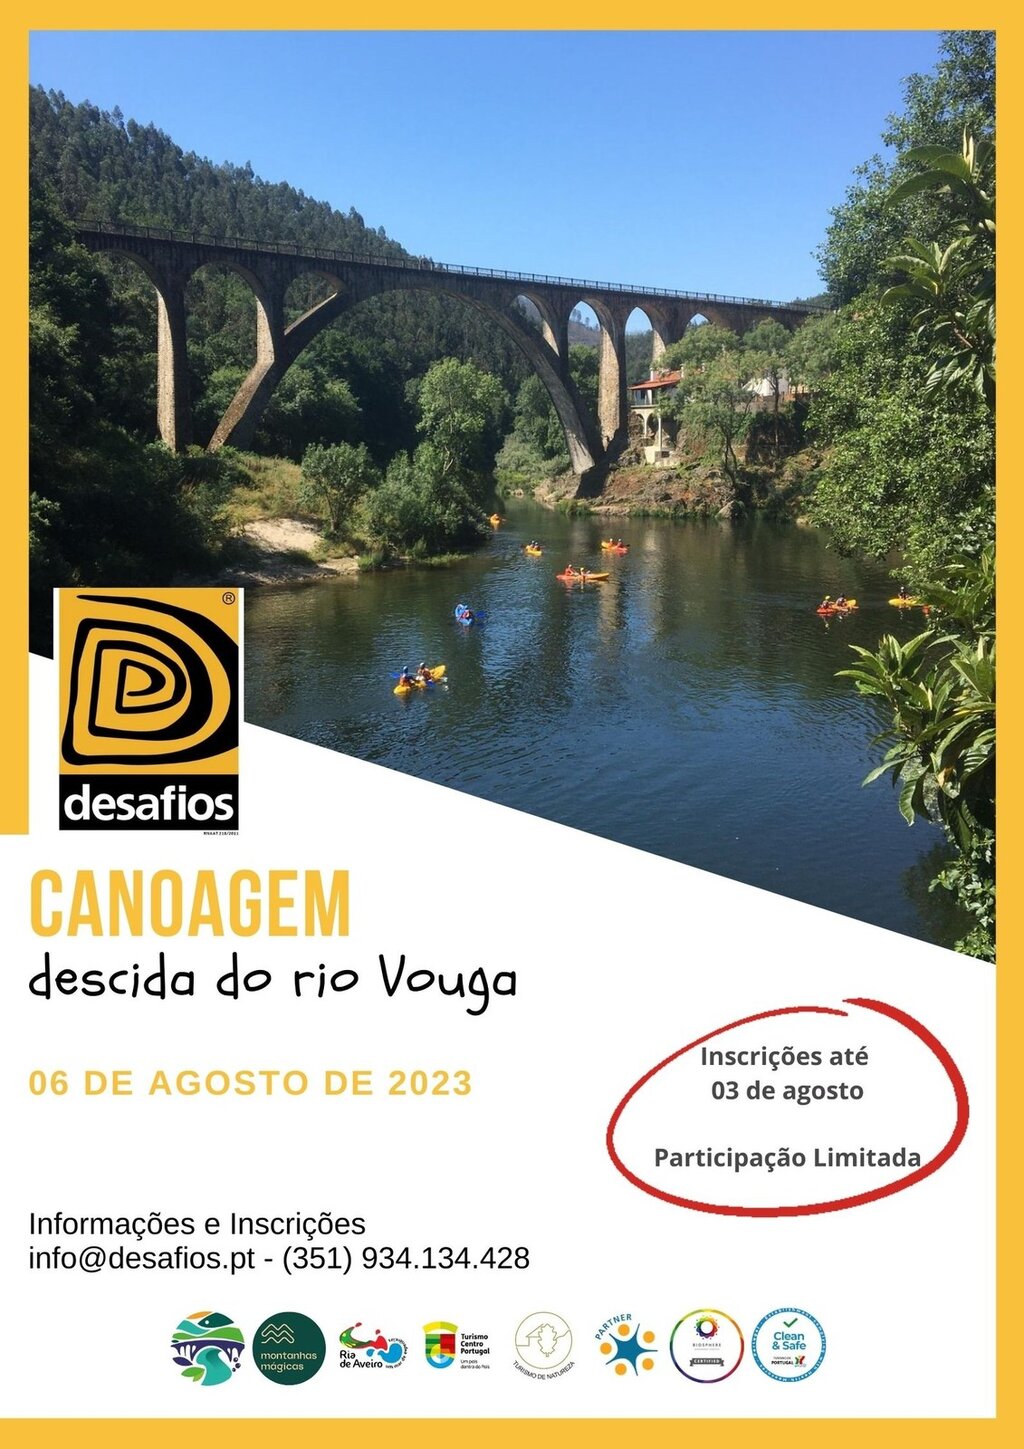 6 agosto - Descida do Rio Vouga - Desafios